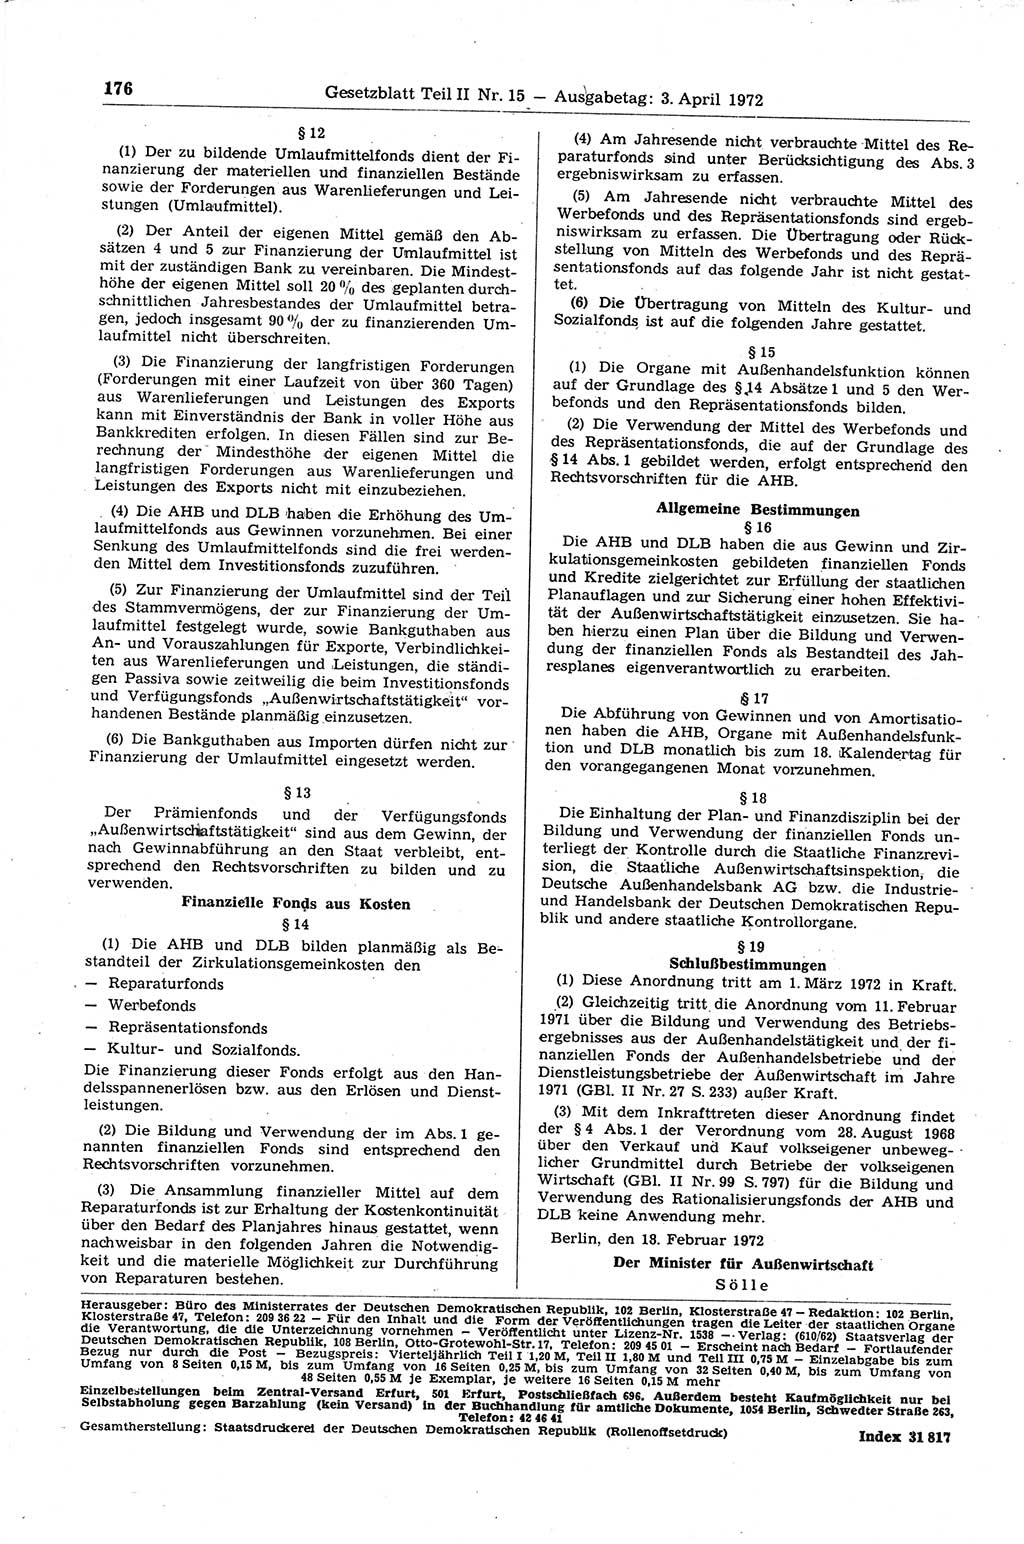 Gesetzblatt (GBl.) der Deutschen Demokratischen Republik (DDR) Teil ⅠⅠ 1972, Seite 176 (GBl. DDR ⅠⅠ 1972, S. 176)